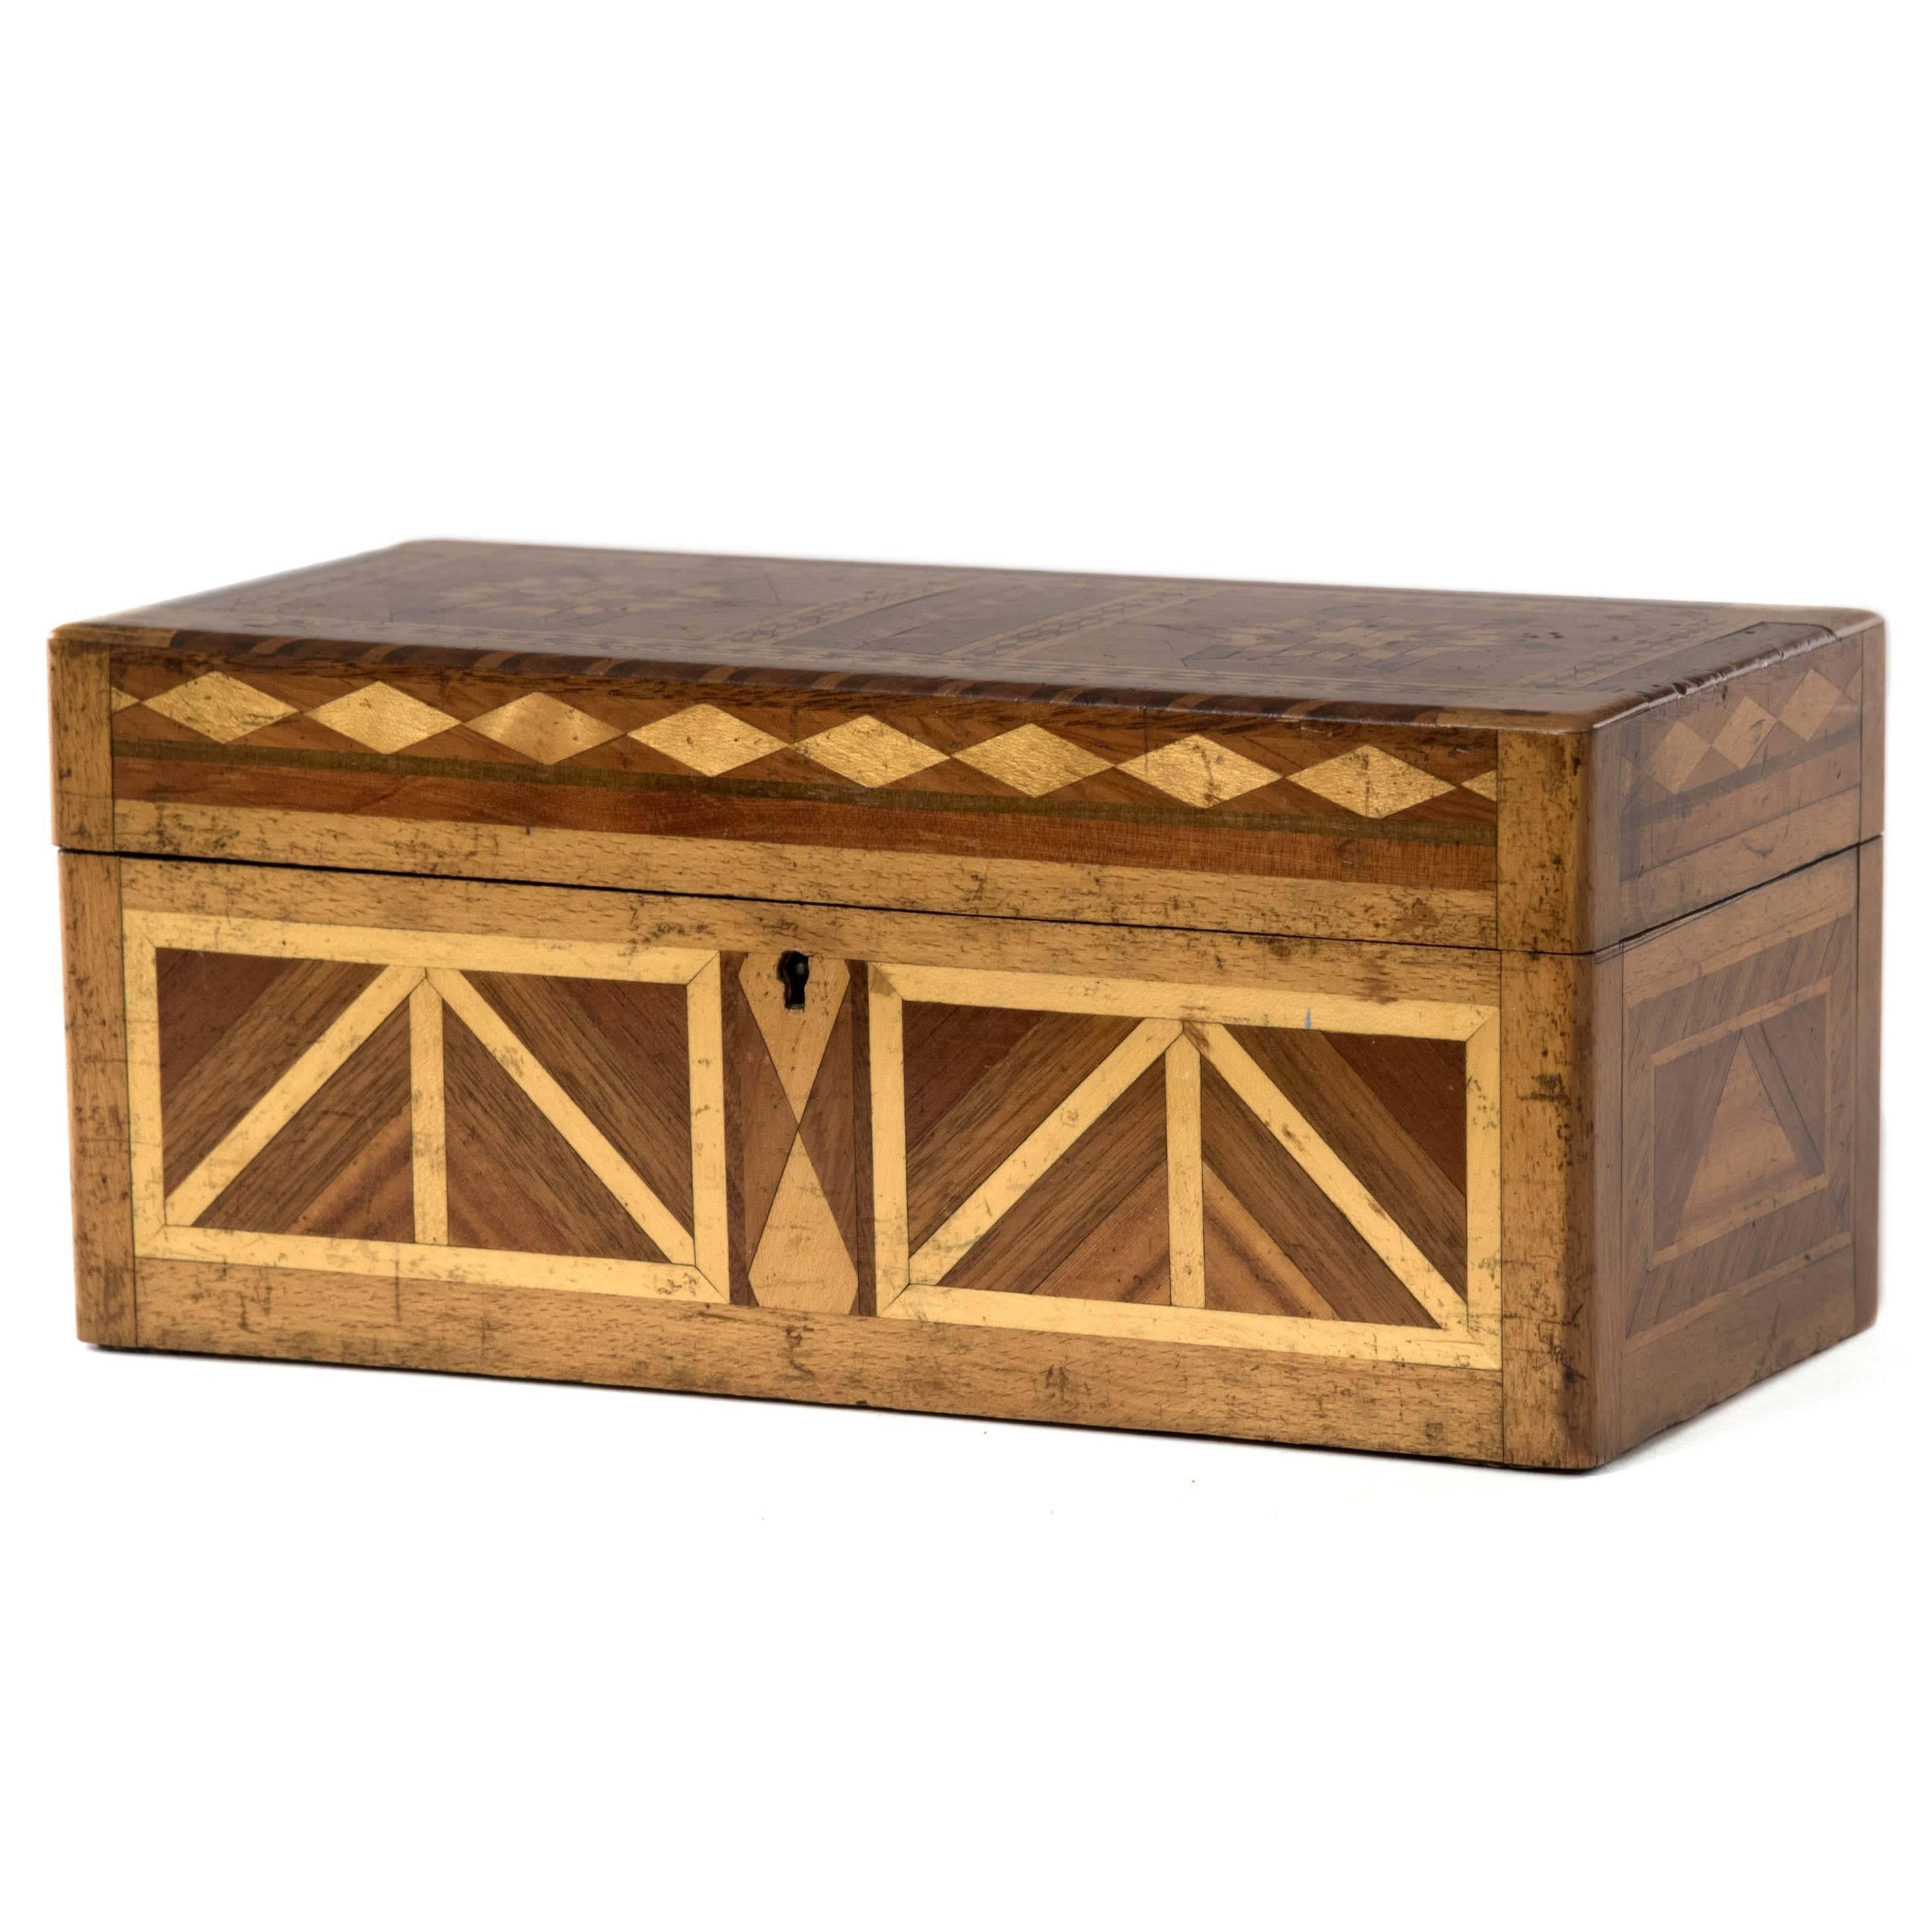 Exquisite 19th Century Parquetry Box